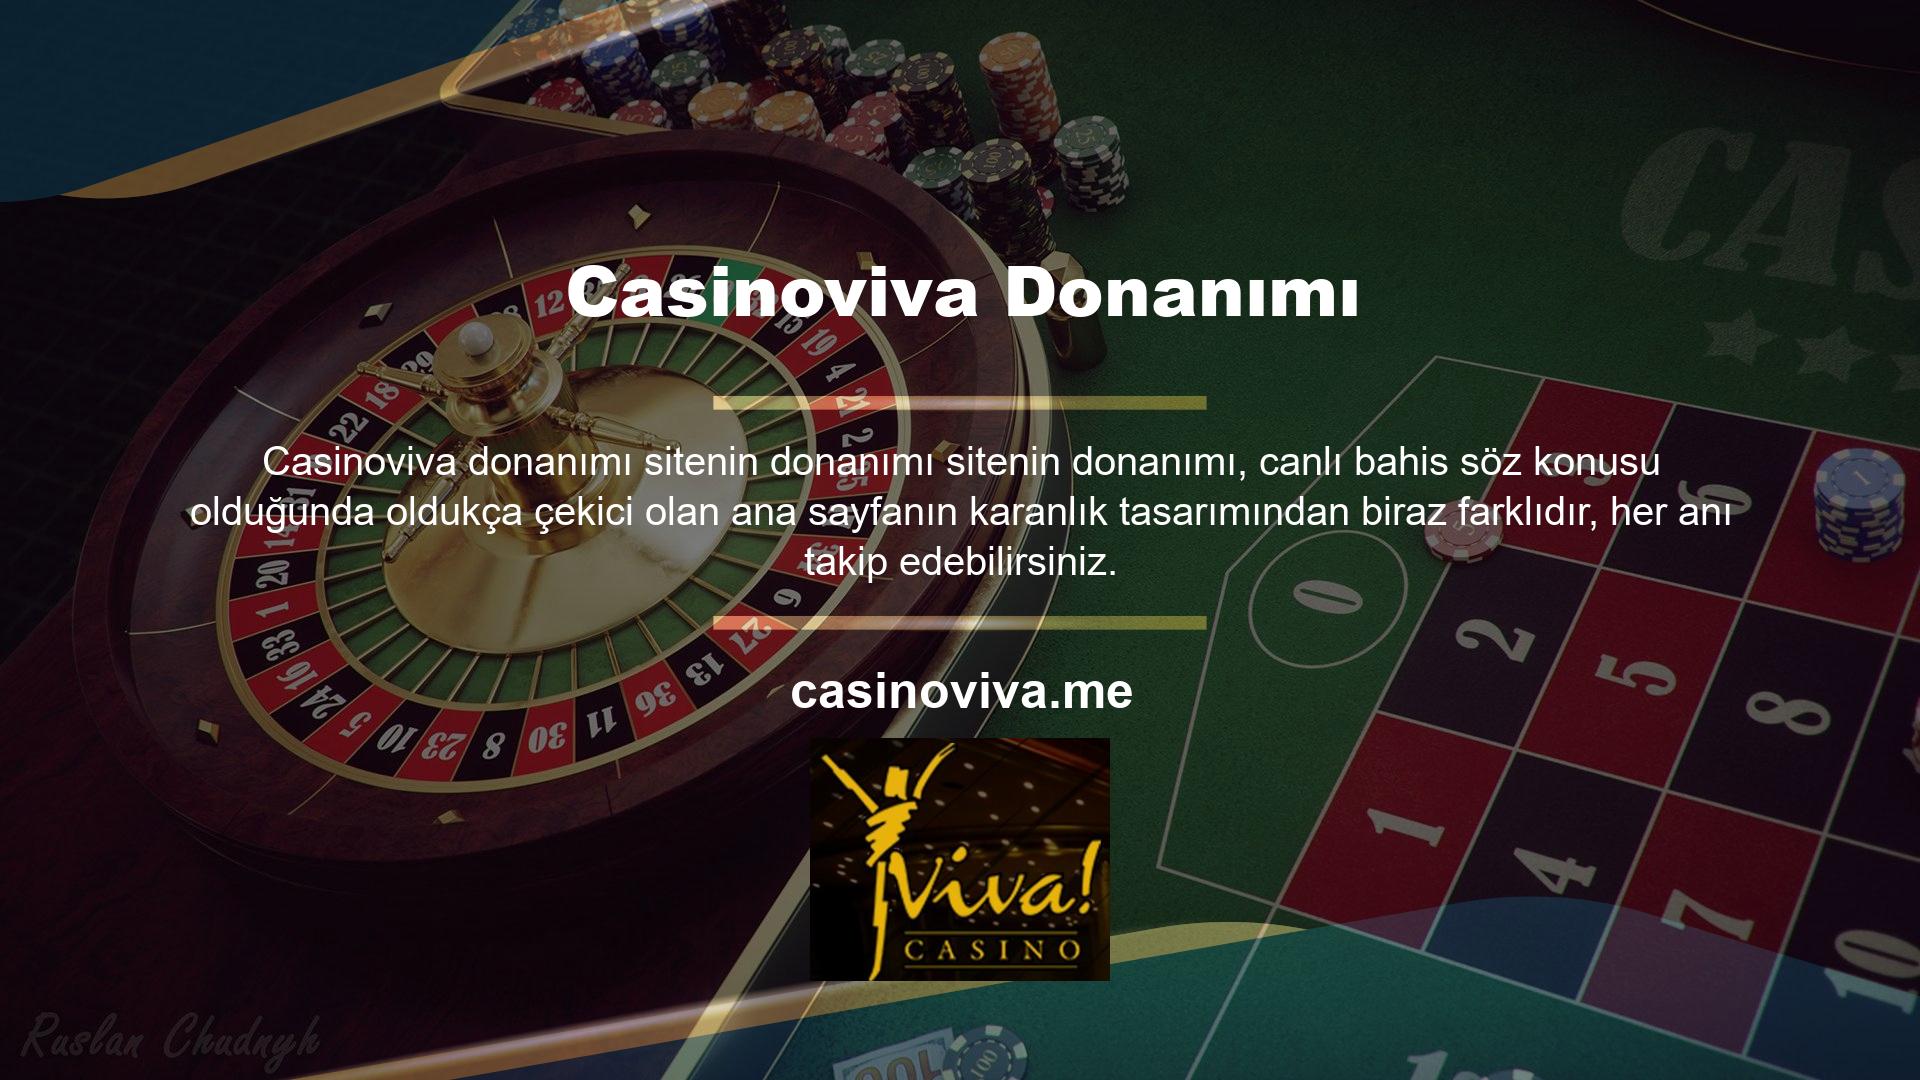 Casinoviva, tüm abonelerin en son oranları ve oyunları takip edebileceği masaüstü ve mobil canlı bahisler için tek bir yere sahiptir